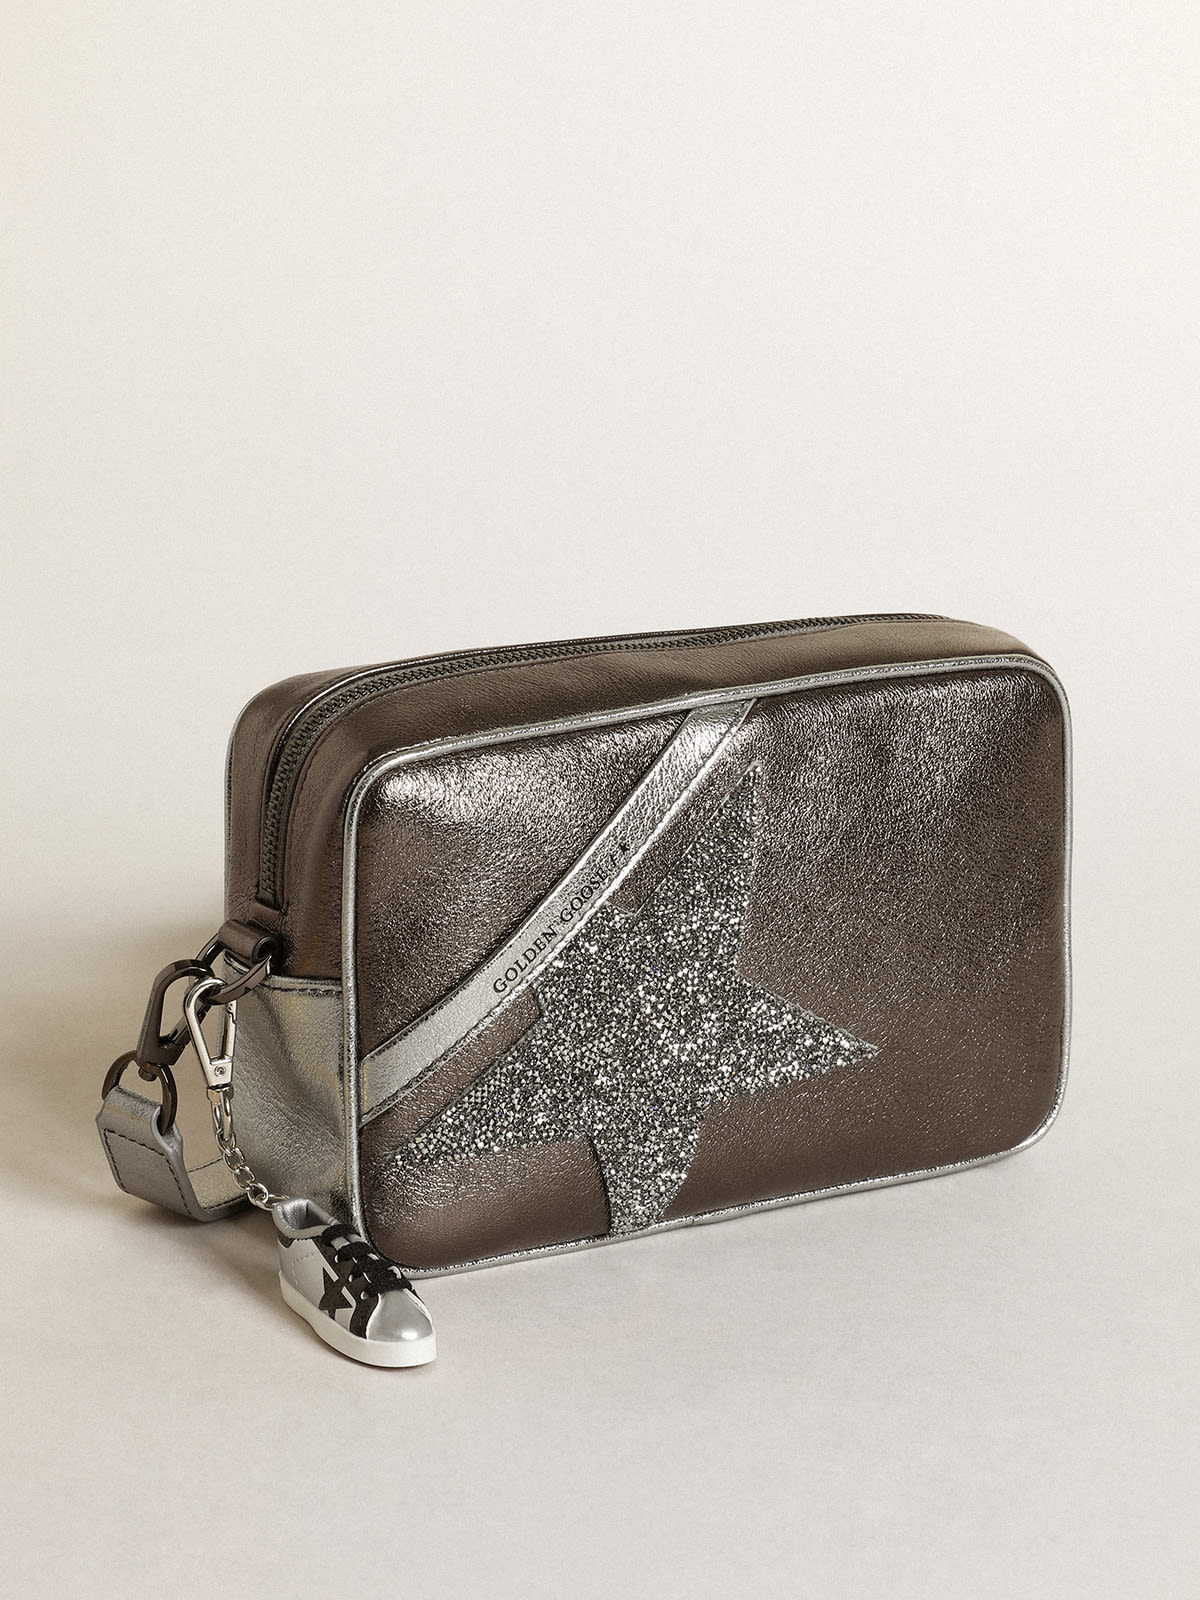 Golden Goose - Sac Star Bag en cuir lamé argenté et gris anthracite avec étoile en cristaux Swarovski in 